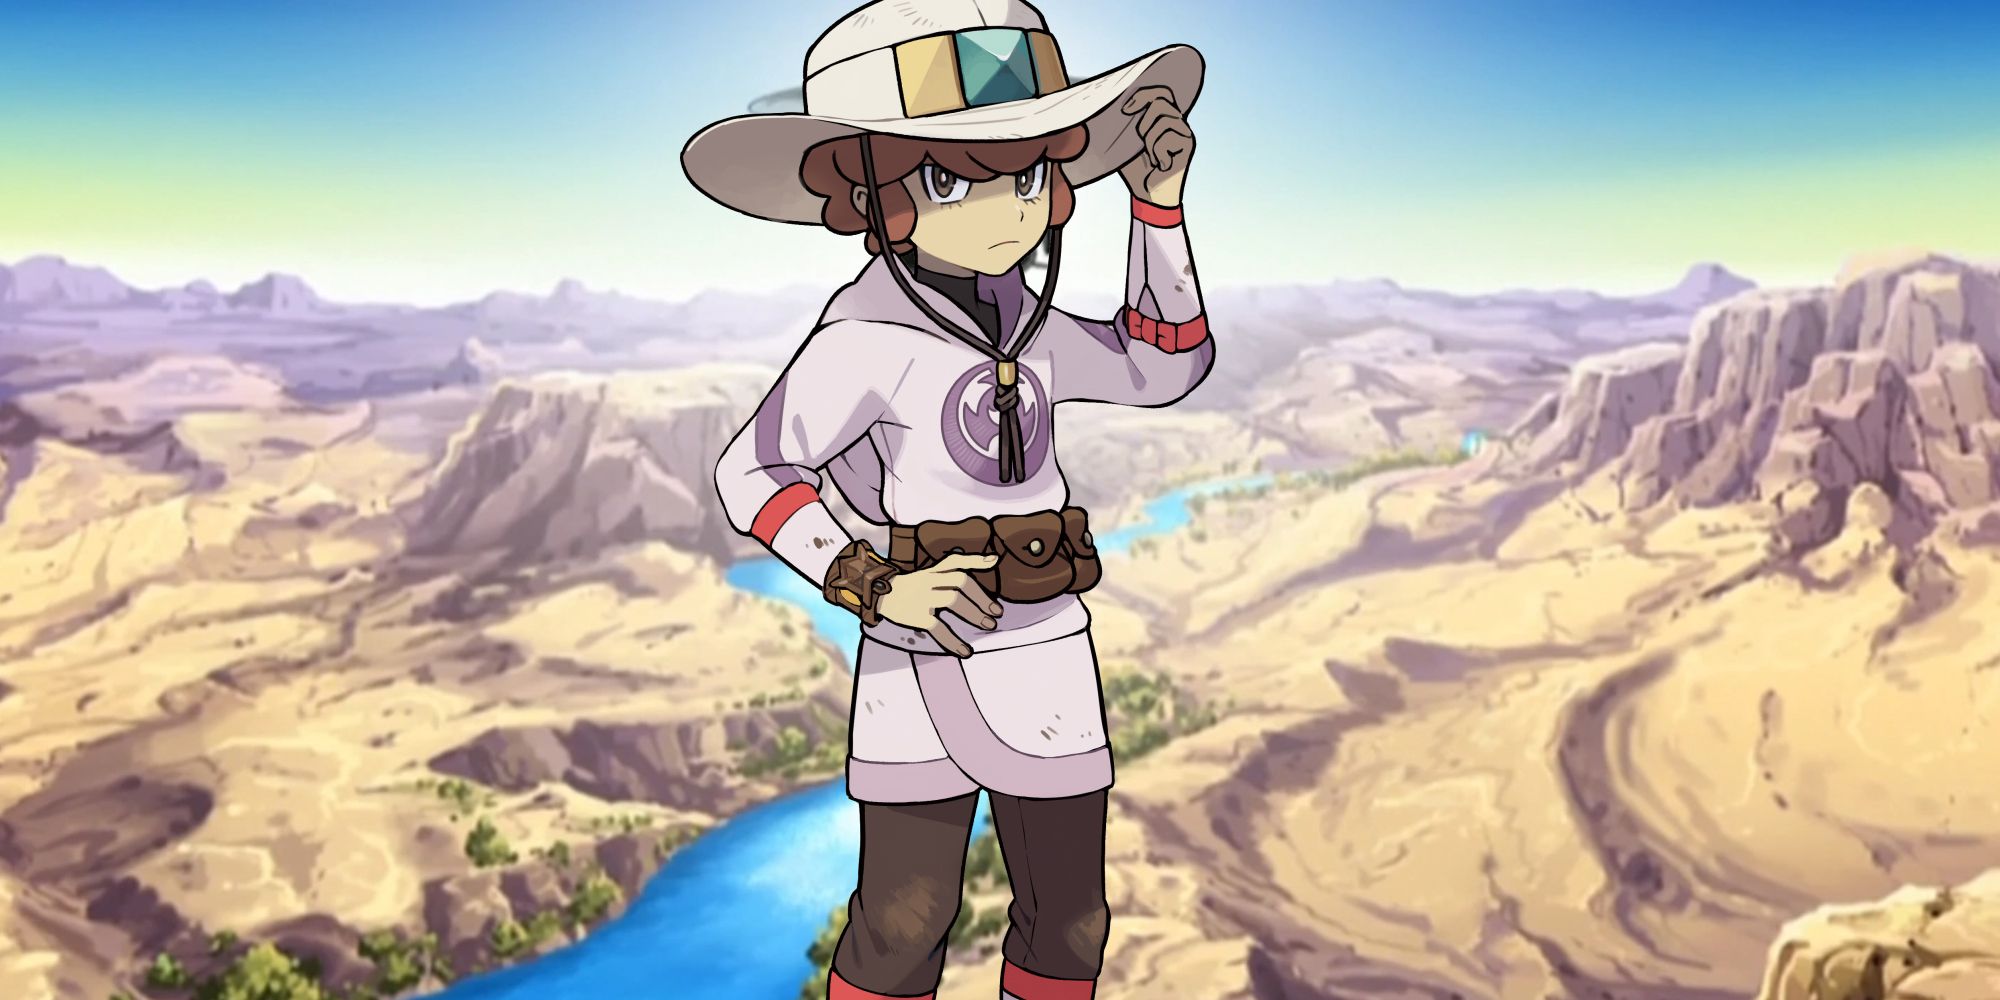 Pokémon's Lian in front of a desert landscape.